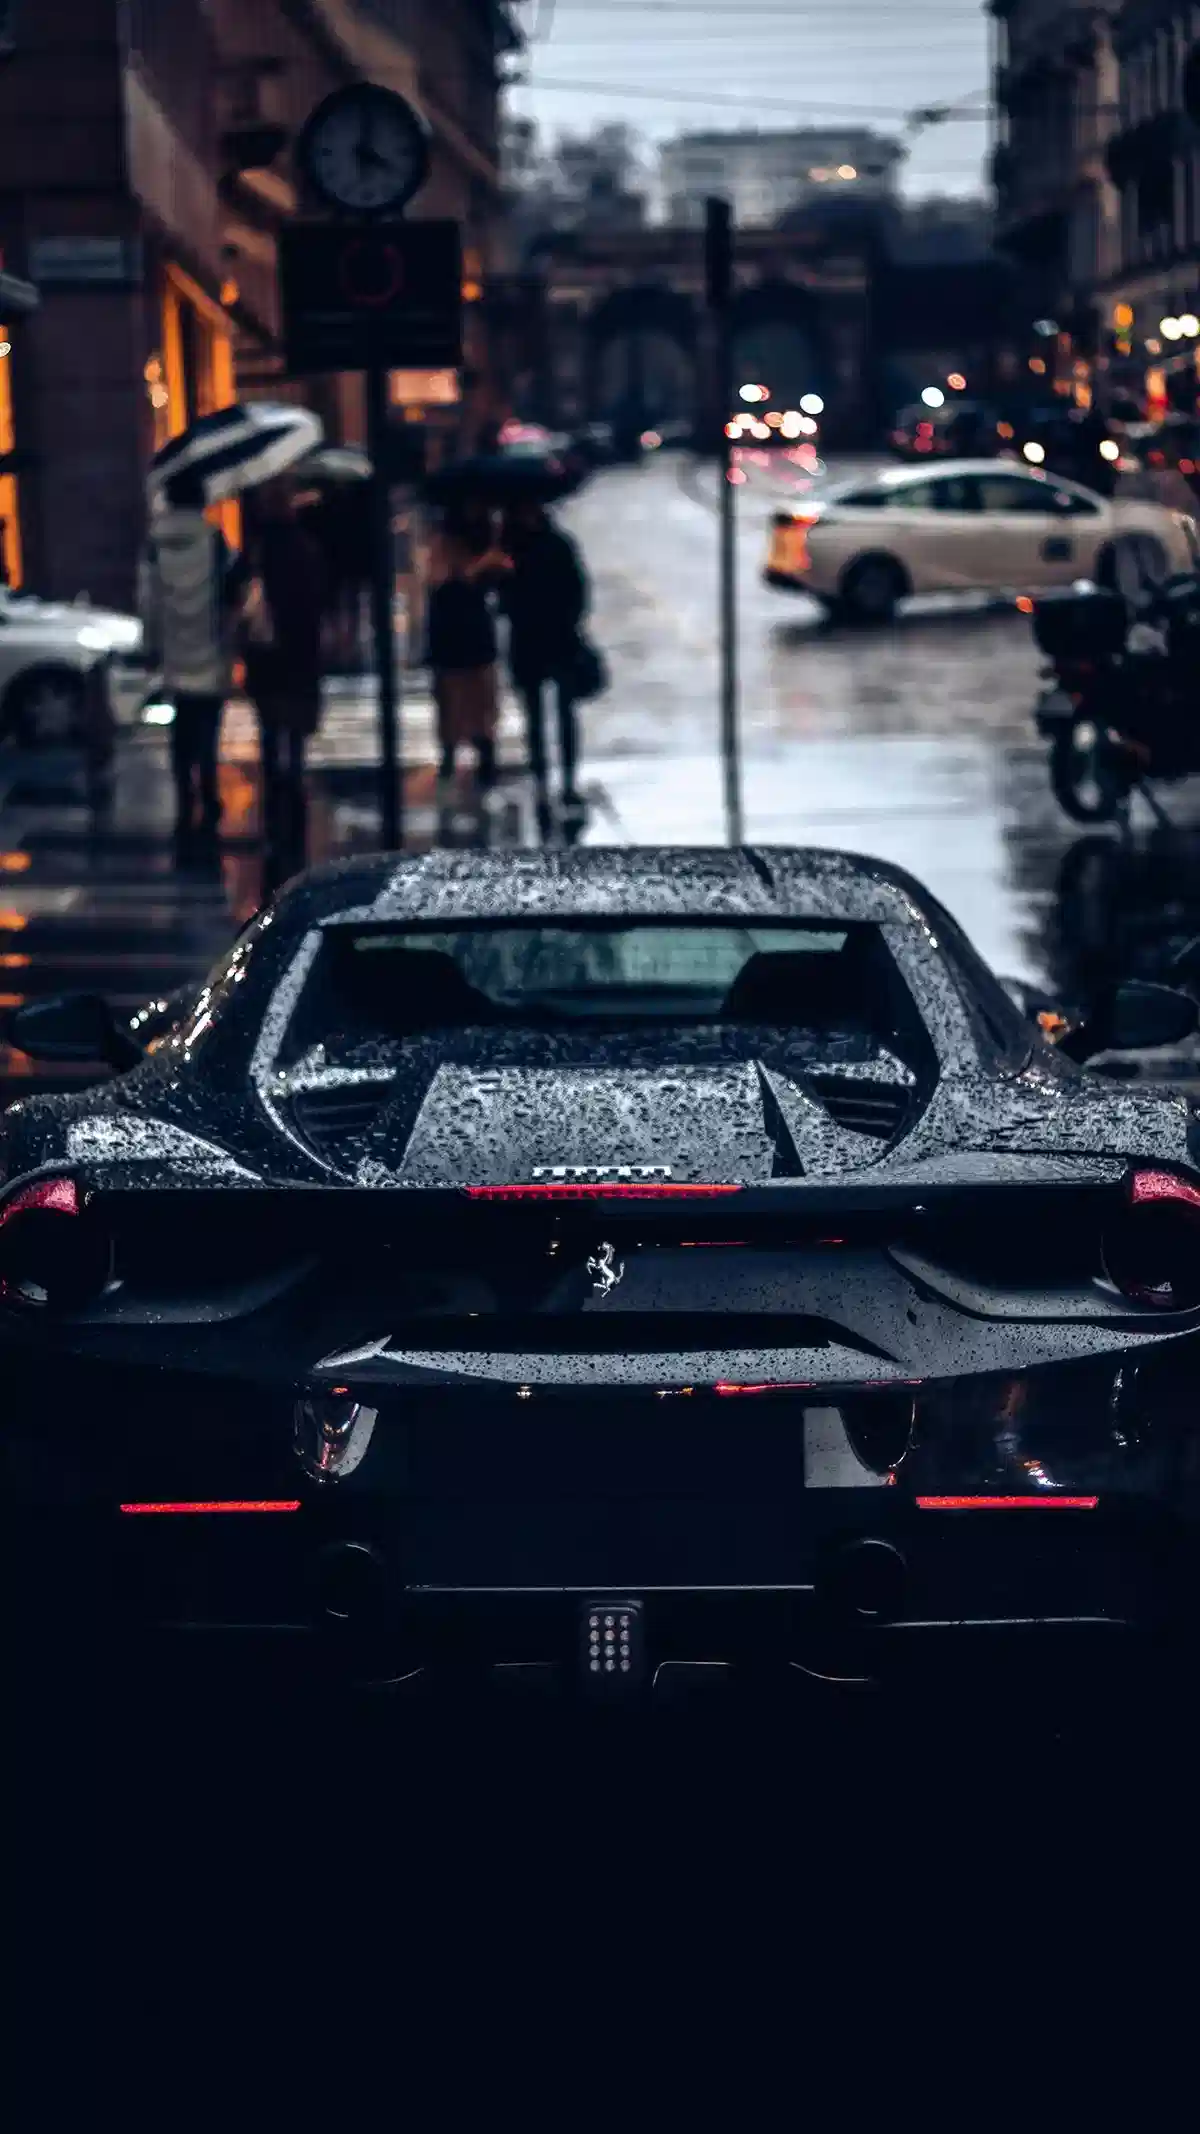 Image of a Ferrari Car